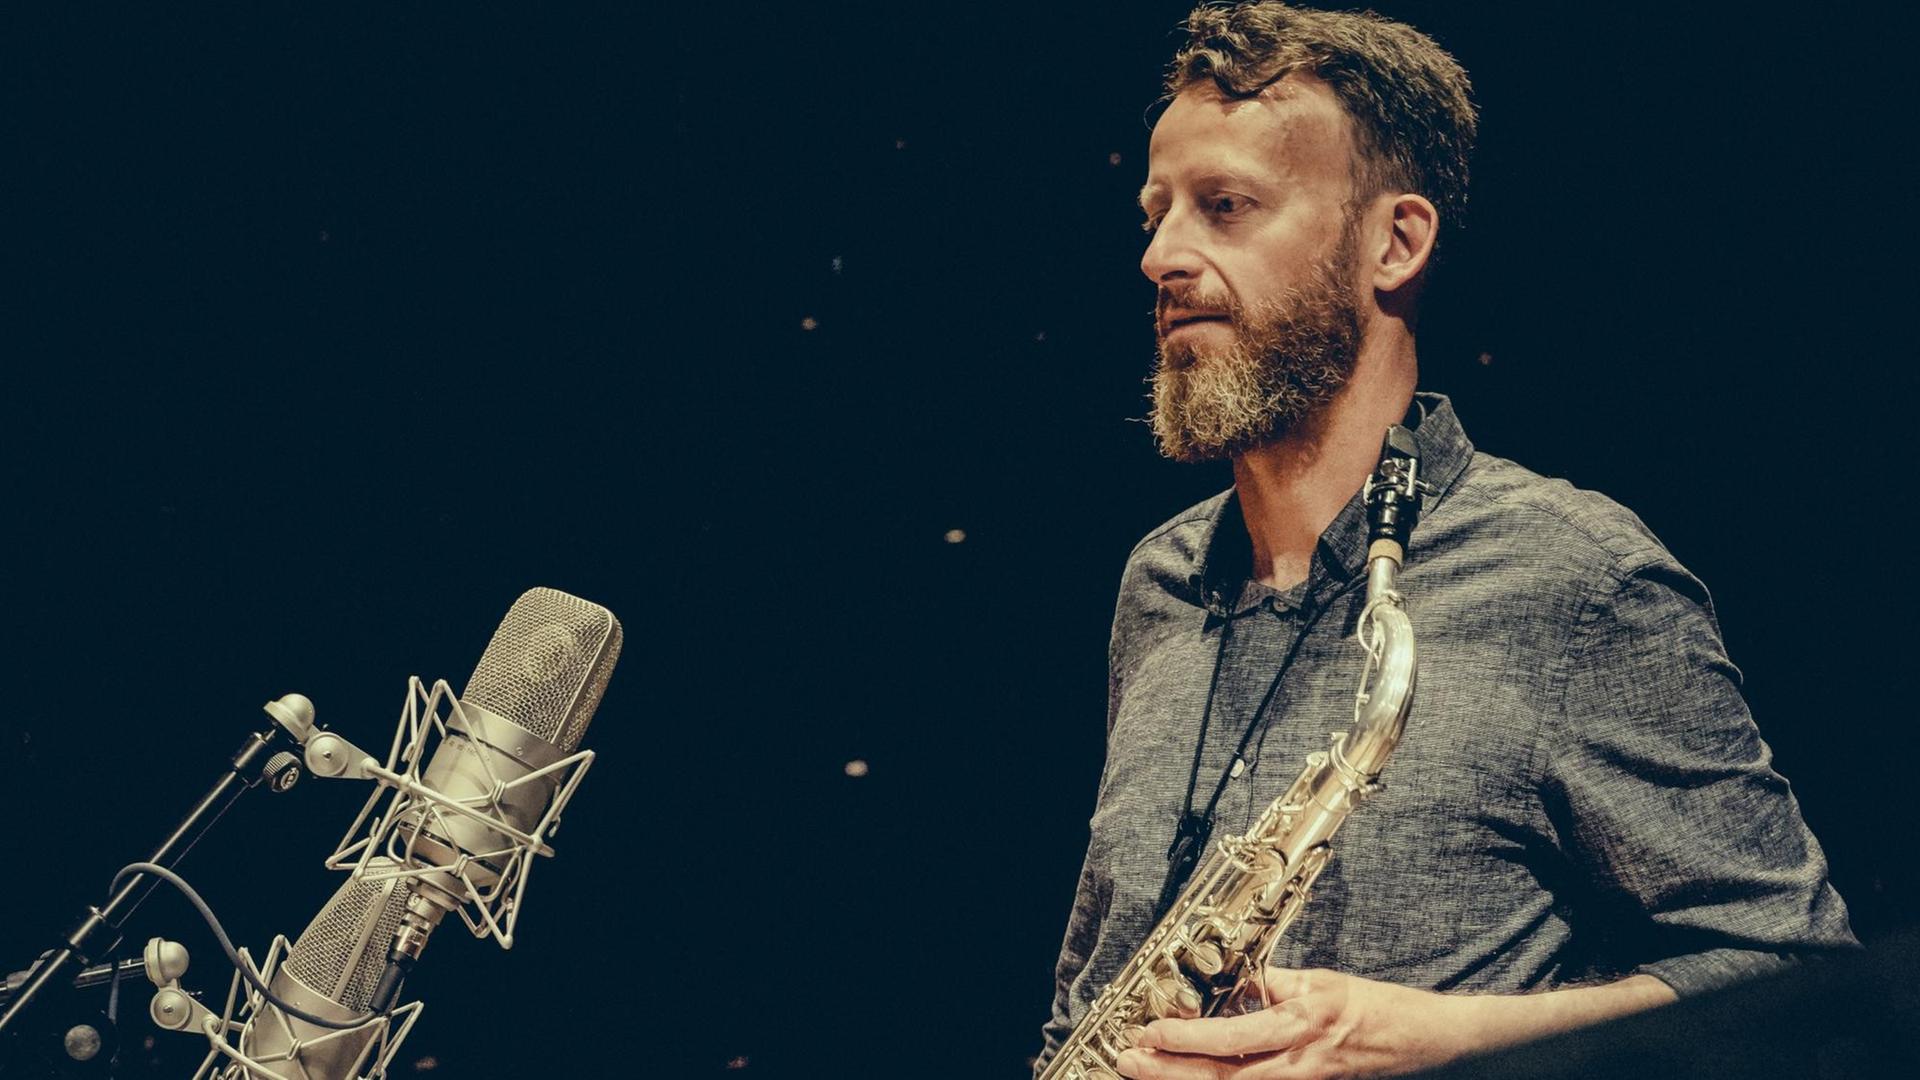 Ein Mann mit langen Bart und einem Saxofon in der Hand schaut mit verträumtem Blick auf die vor ihm aufgestellten Mikrofone.